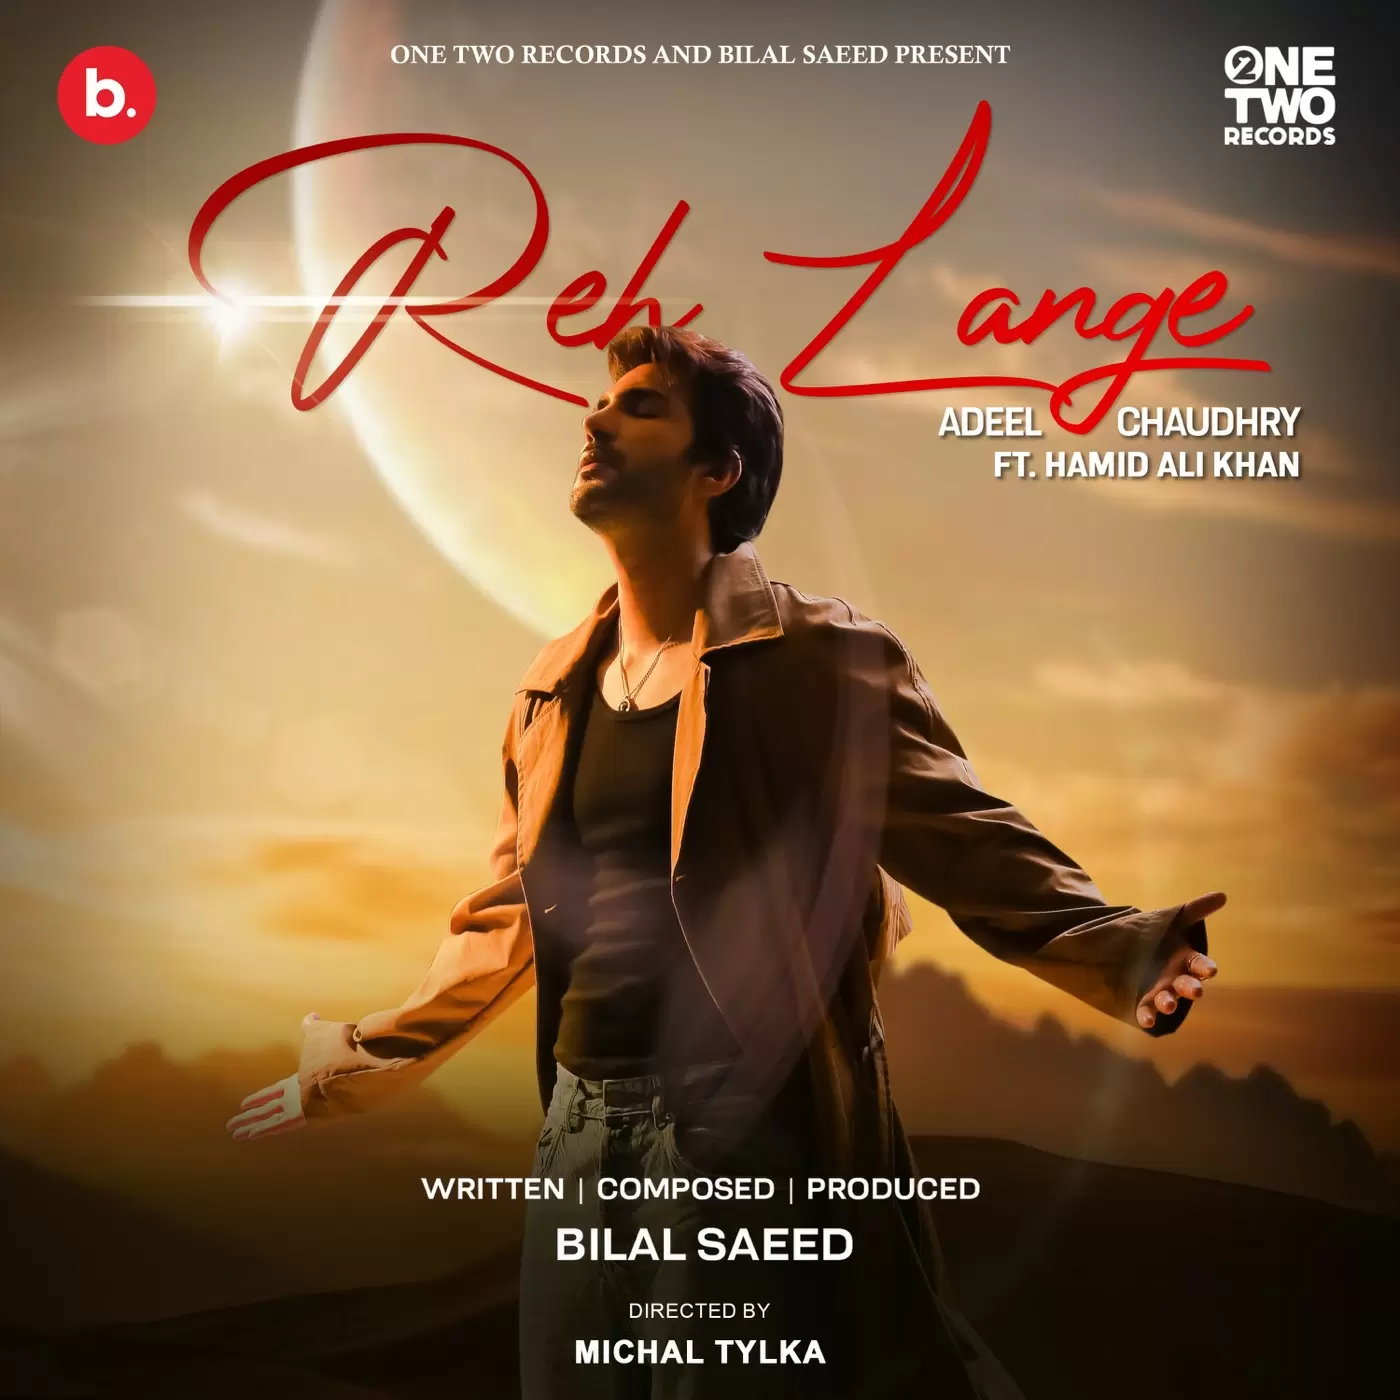 Reh Lange Adeel Chaudhry Mp3 Download Song - Mr-Punjab